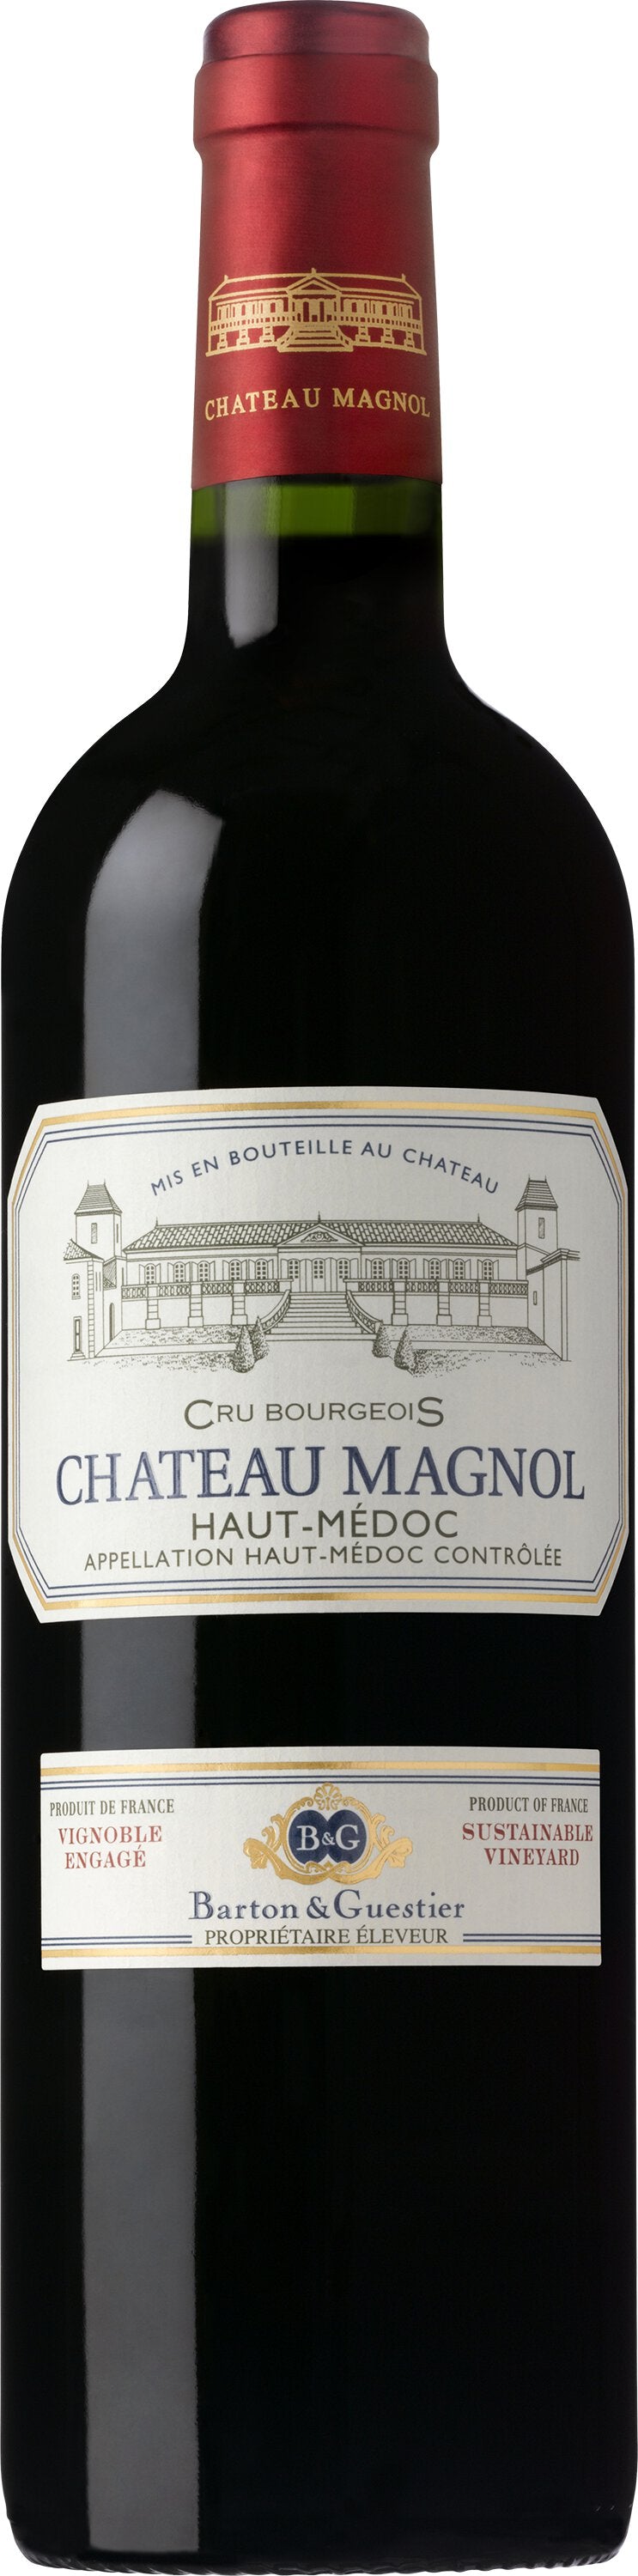 Barton & Guestier Château Magnol Haut-Me?doc